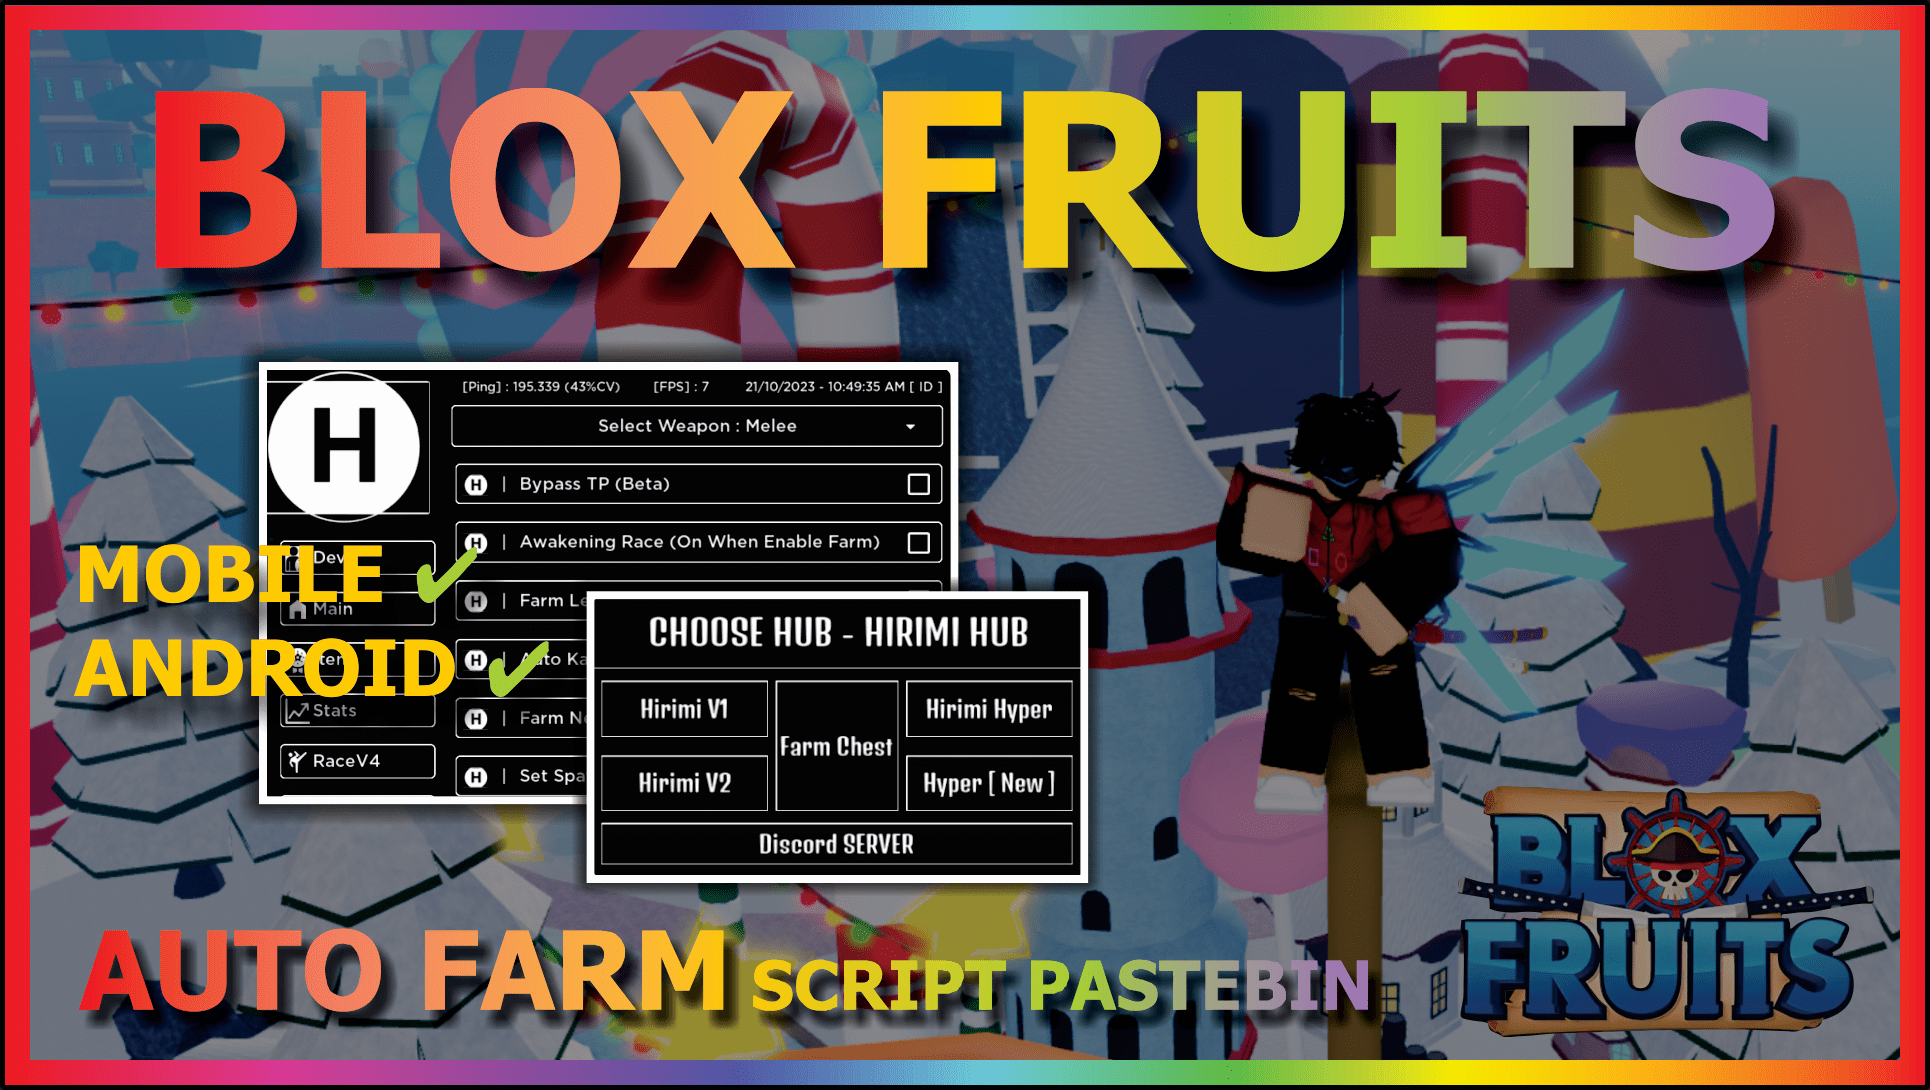 RIPPER Hub V3 Blox Fruits Script